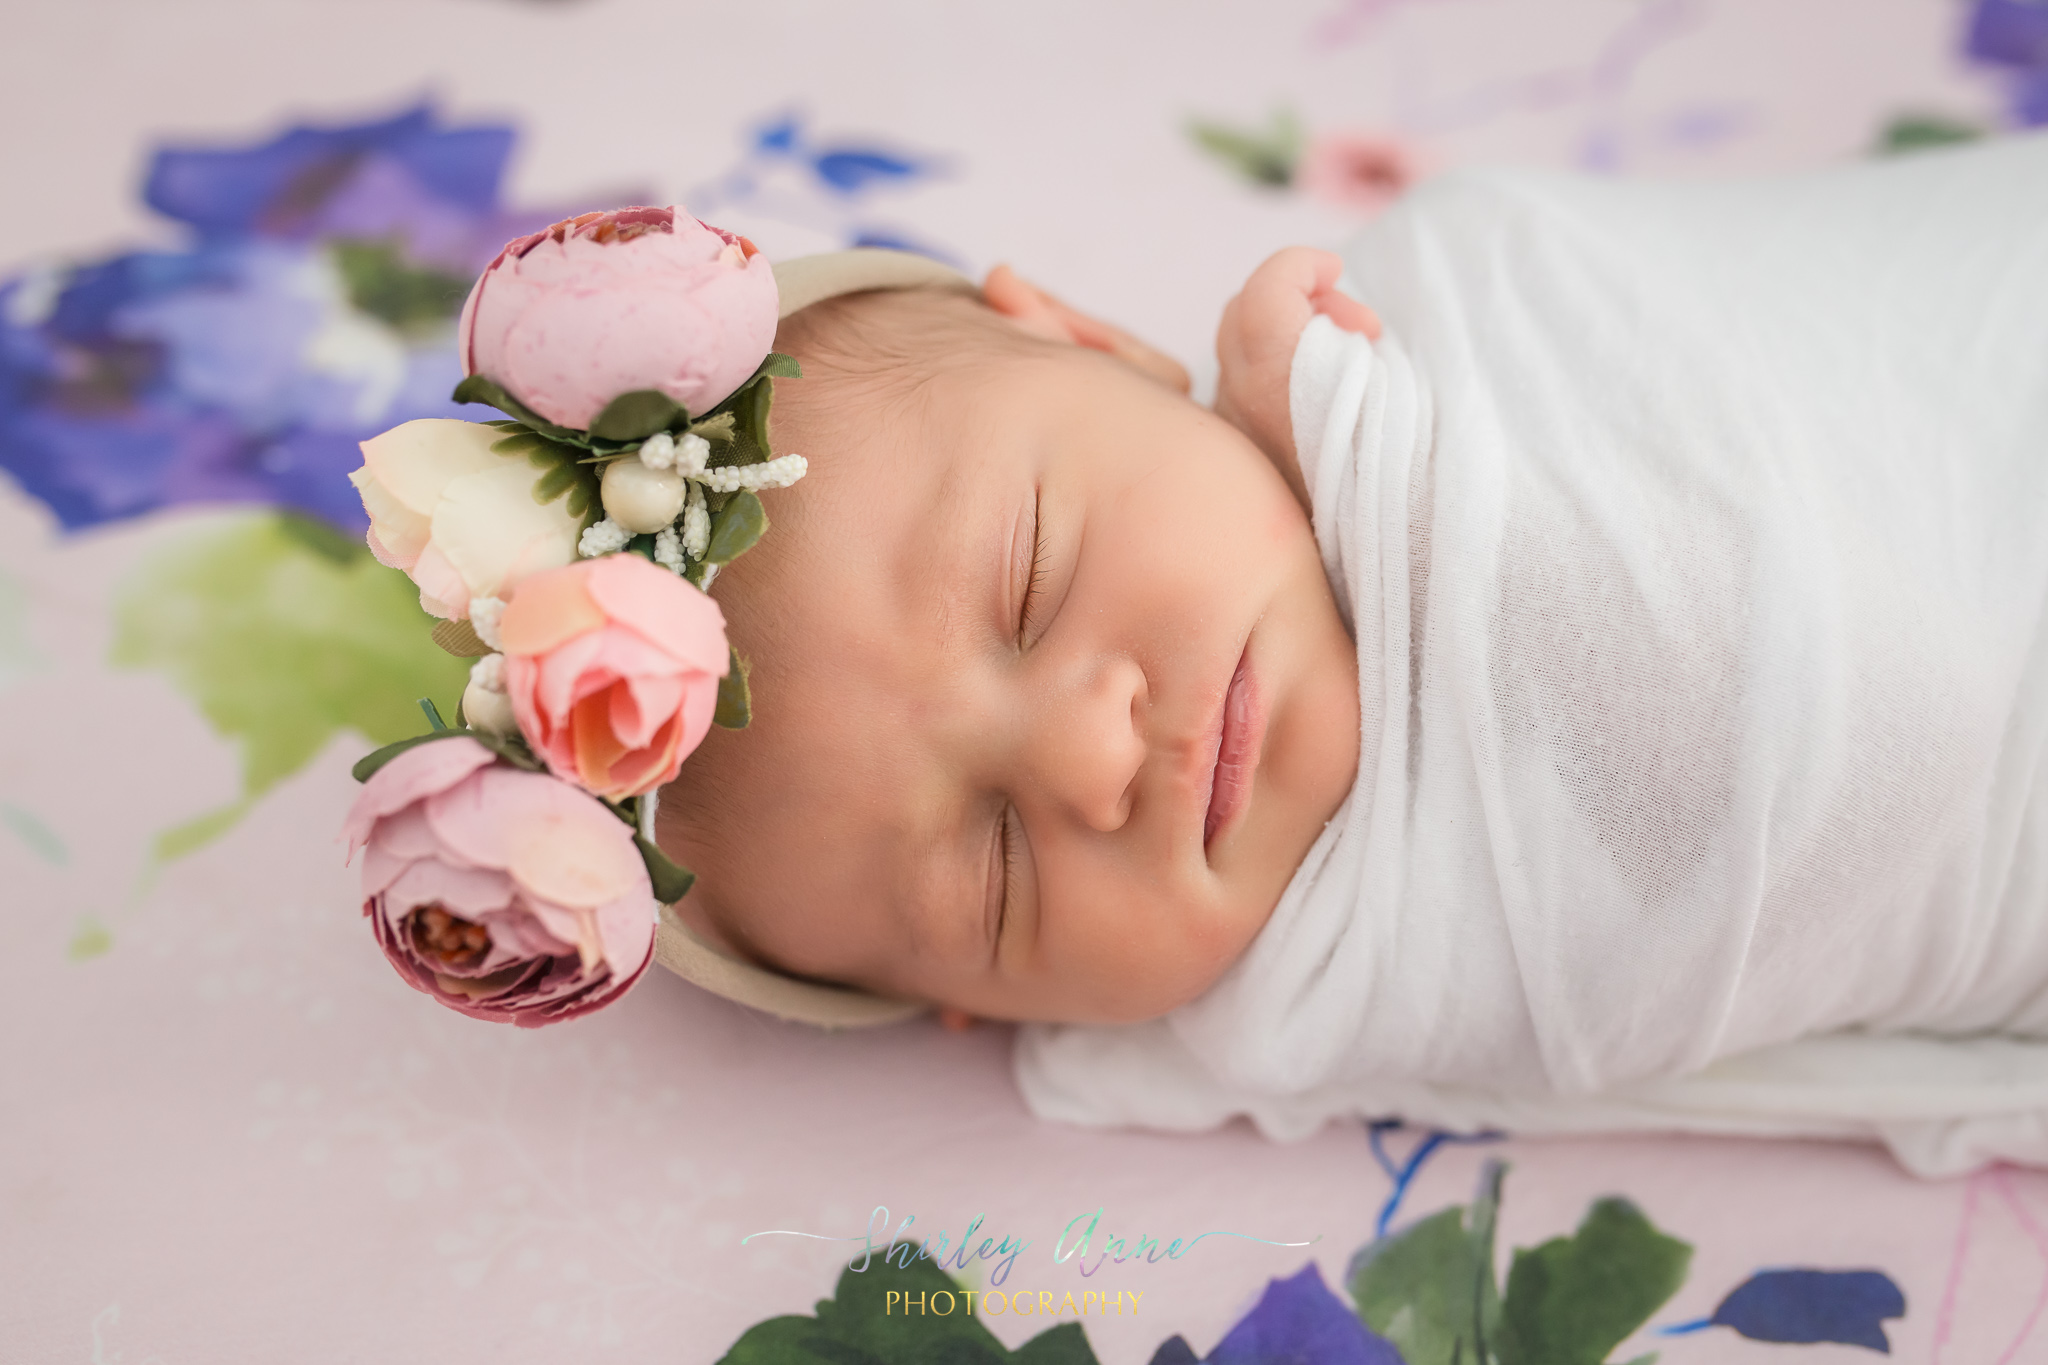 newborn baby with flower crown newborn session